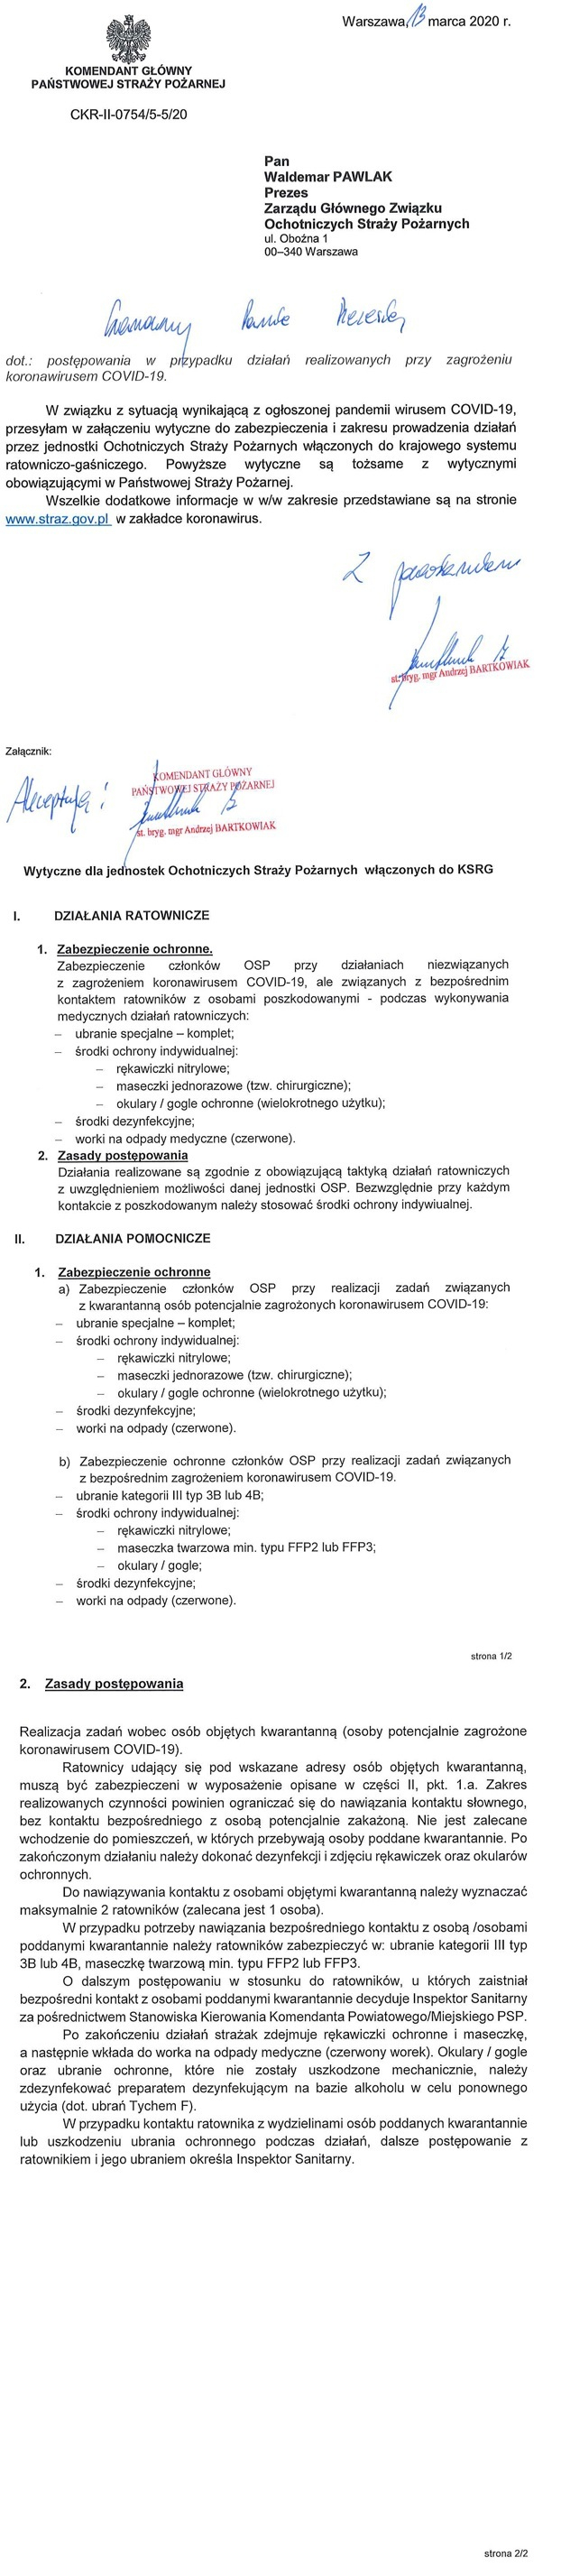 Informacje dotyczące postępowania przez jednostki OSP wytypowane do prowadzenia działań w związku z koronawirusem